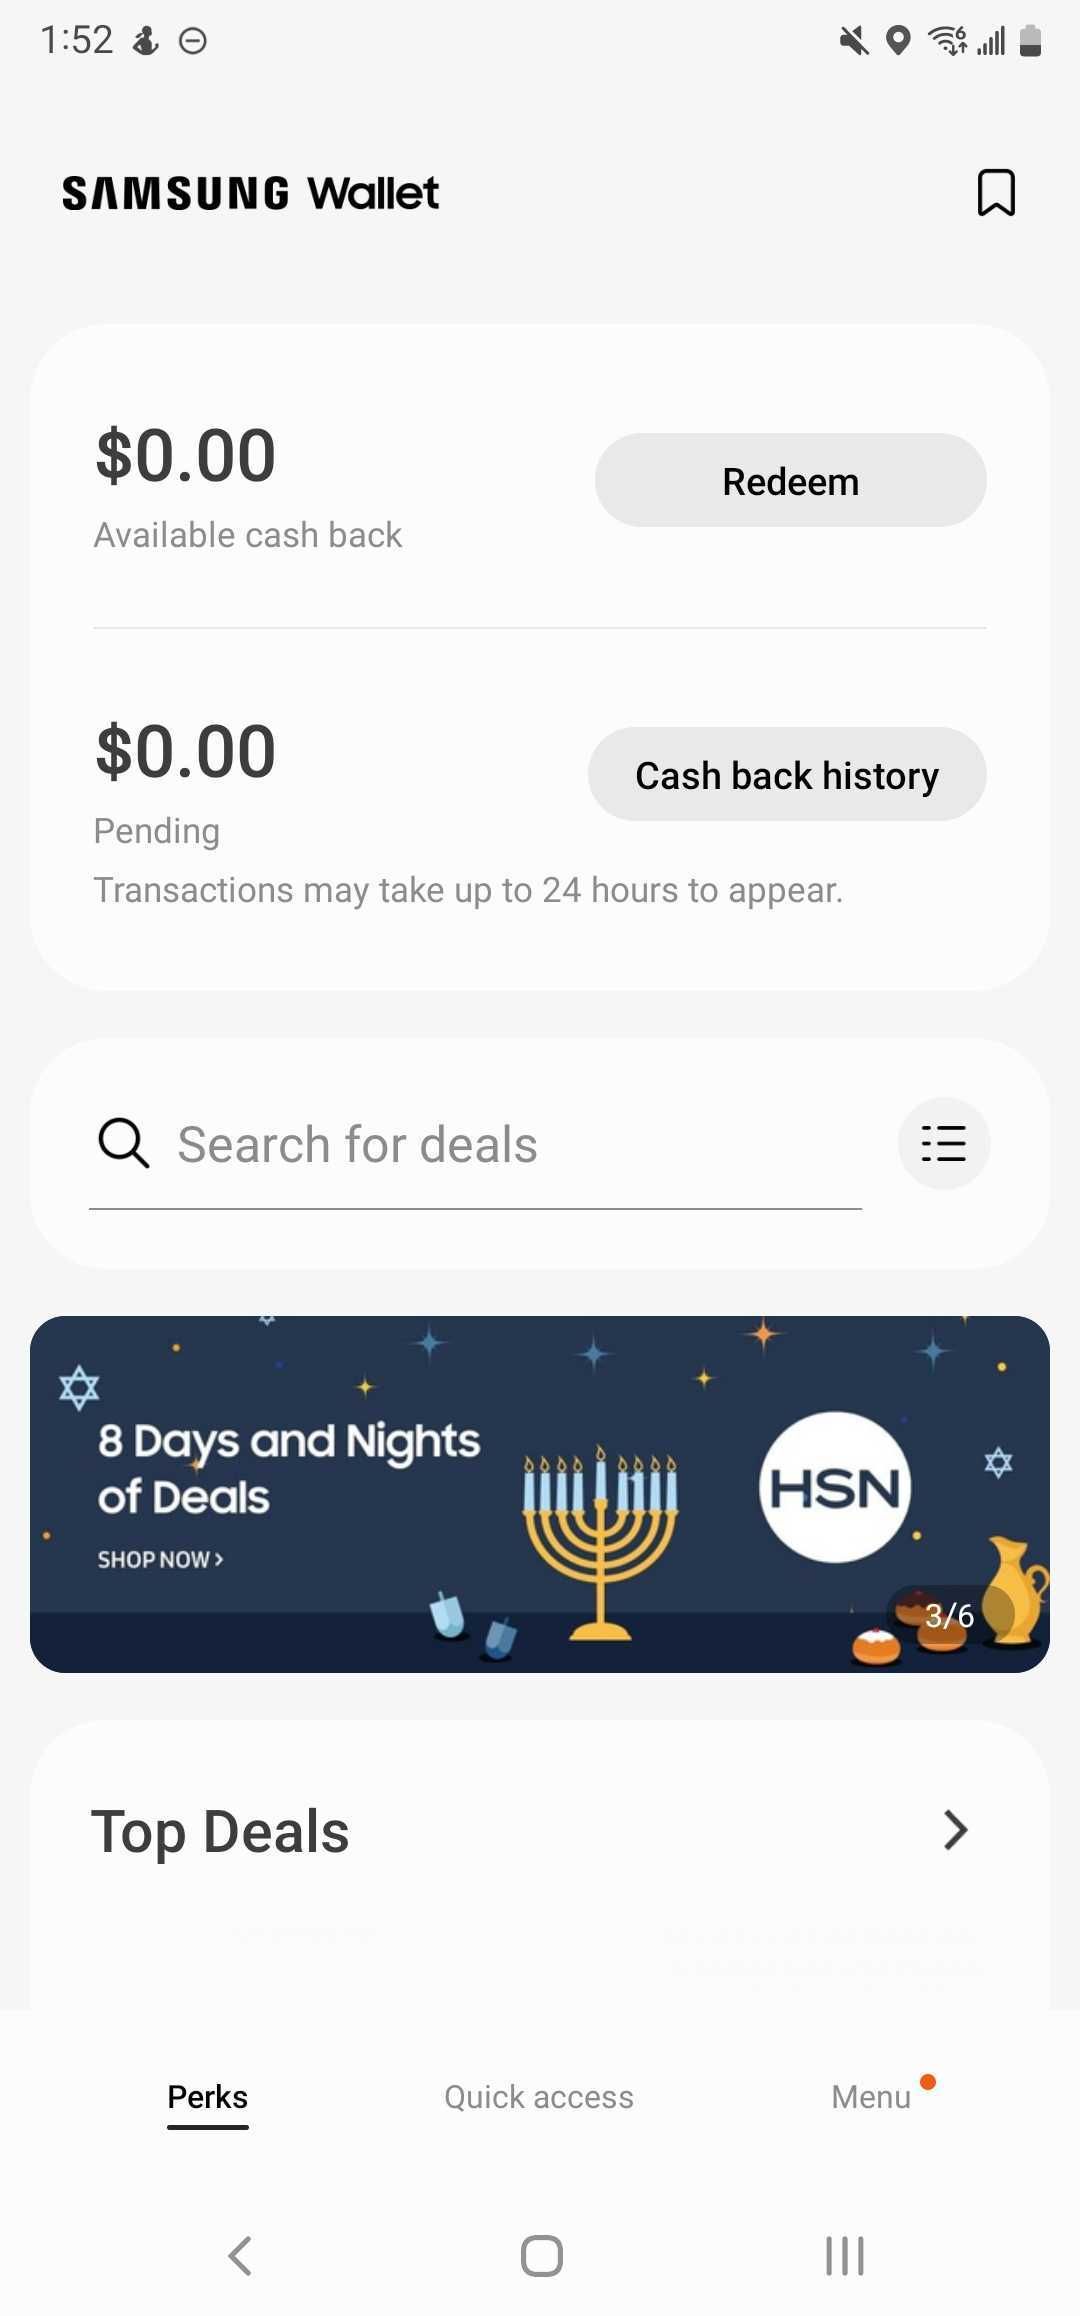 captura de tela da página inicial do aplicativo Samsung Wallet